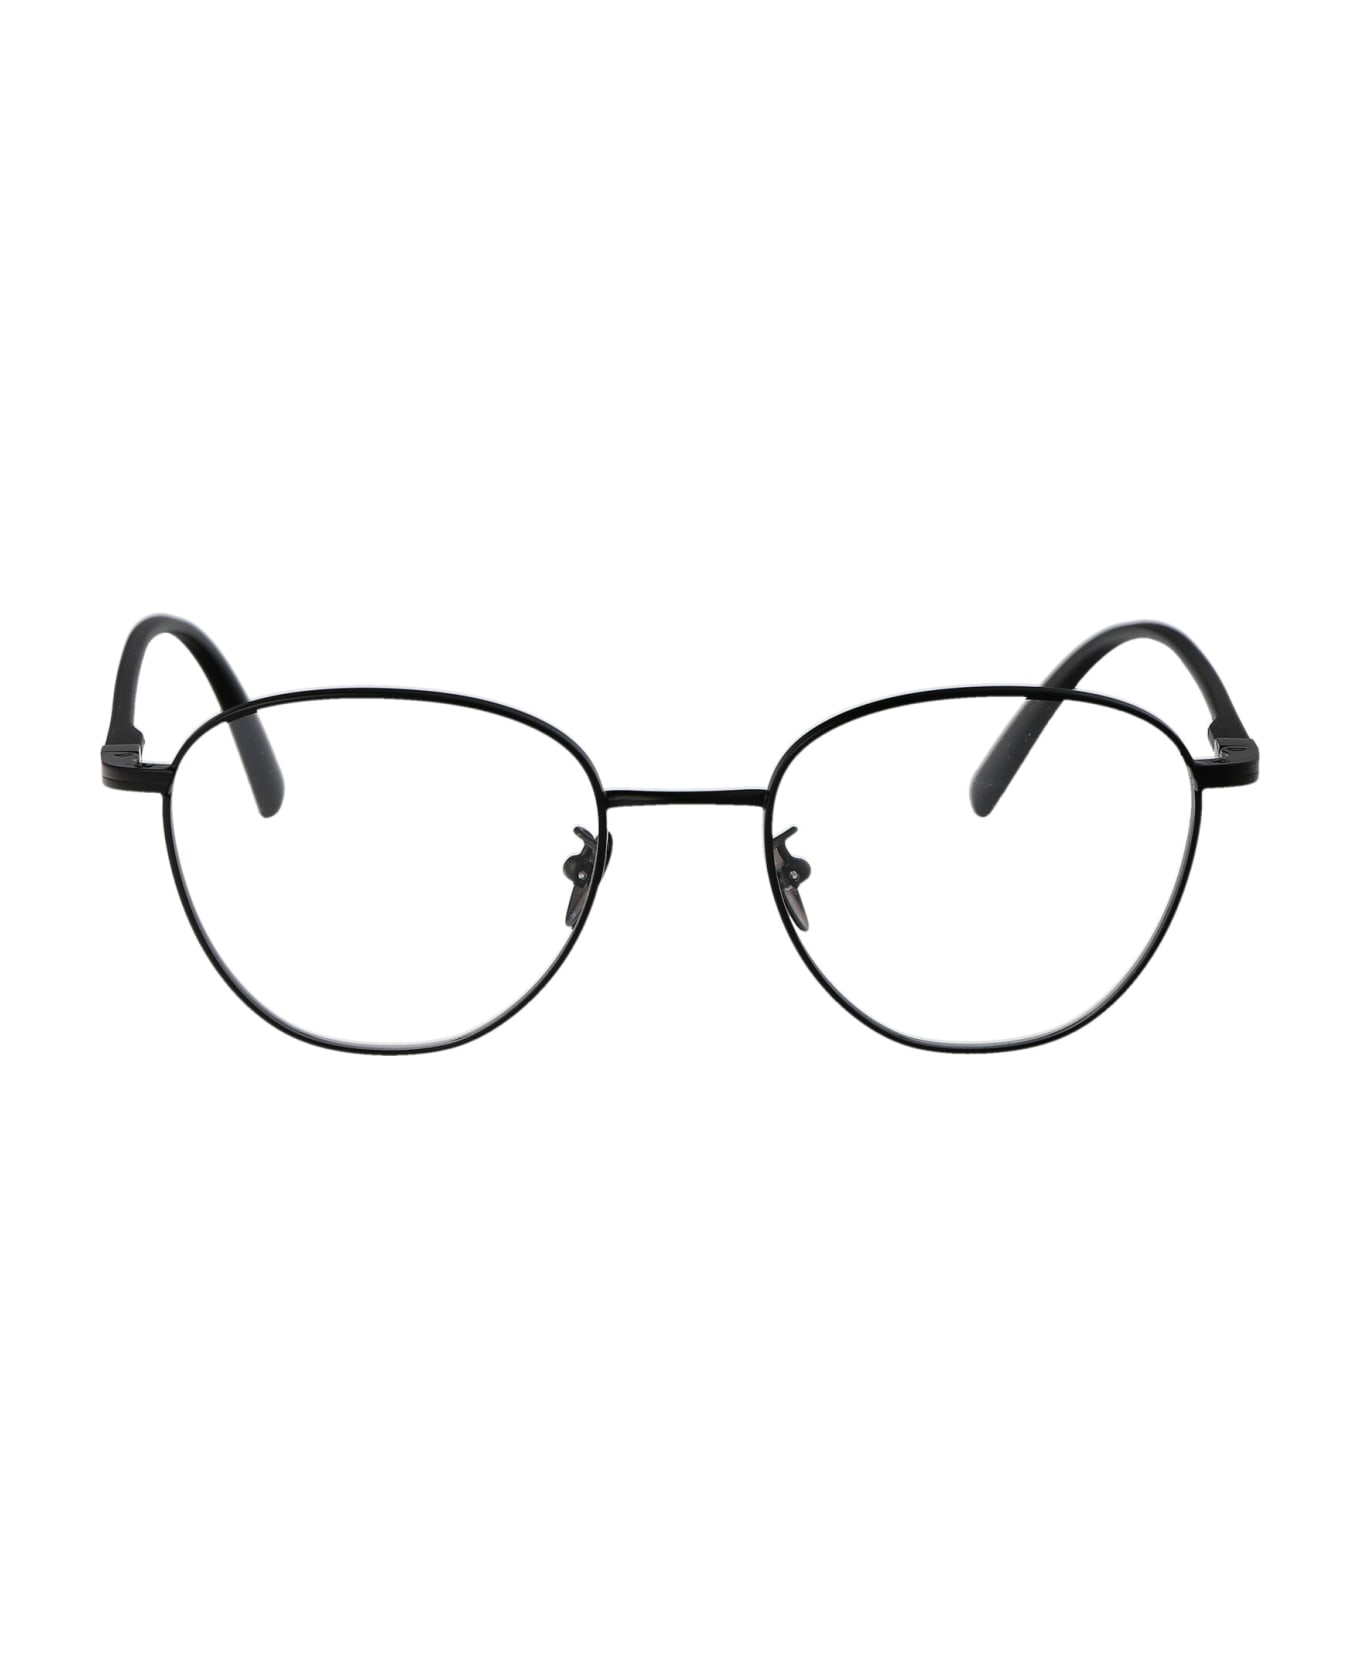 Giorgio Armani 0ar5134 Glasses - 3001 MATTE BLACK